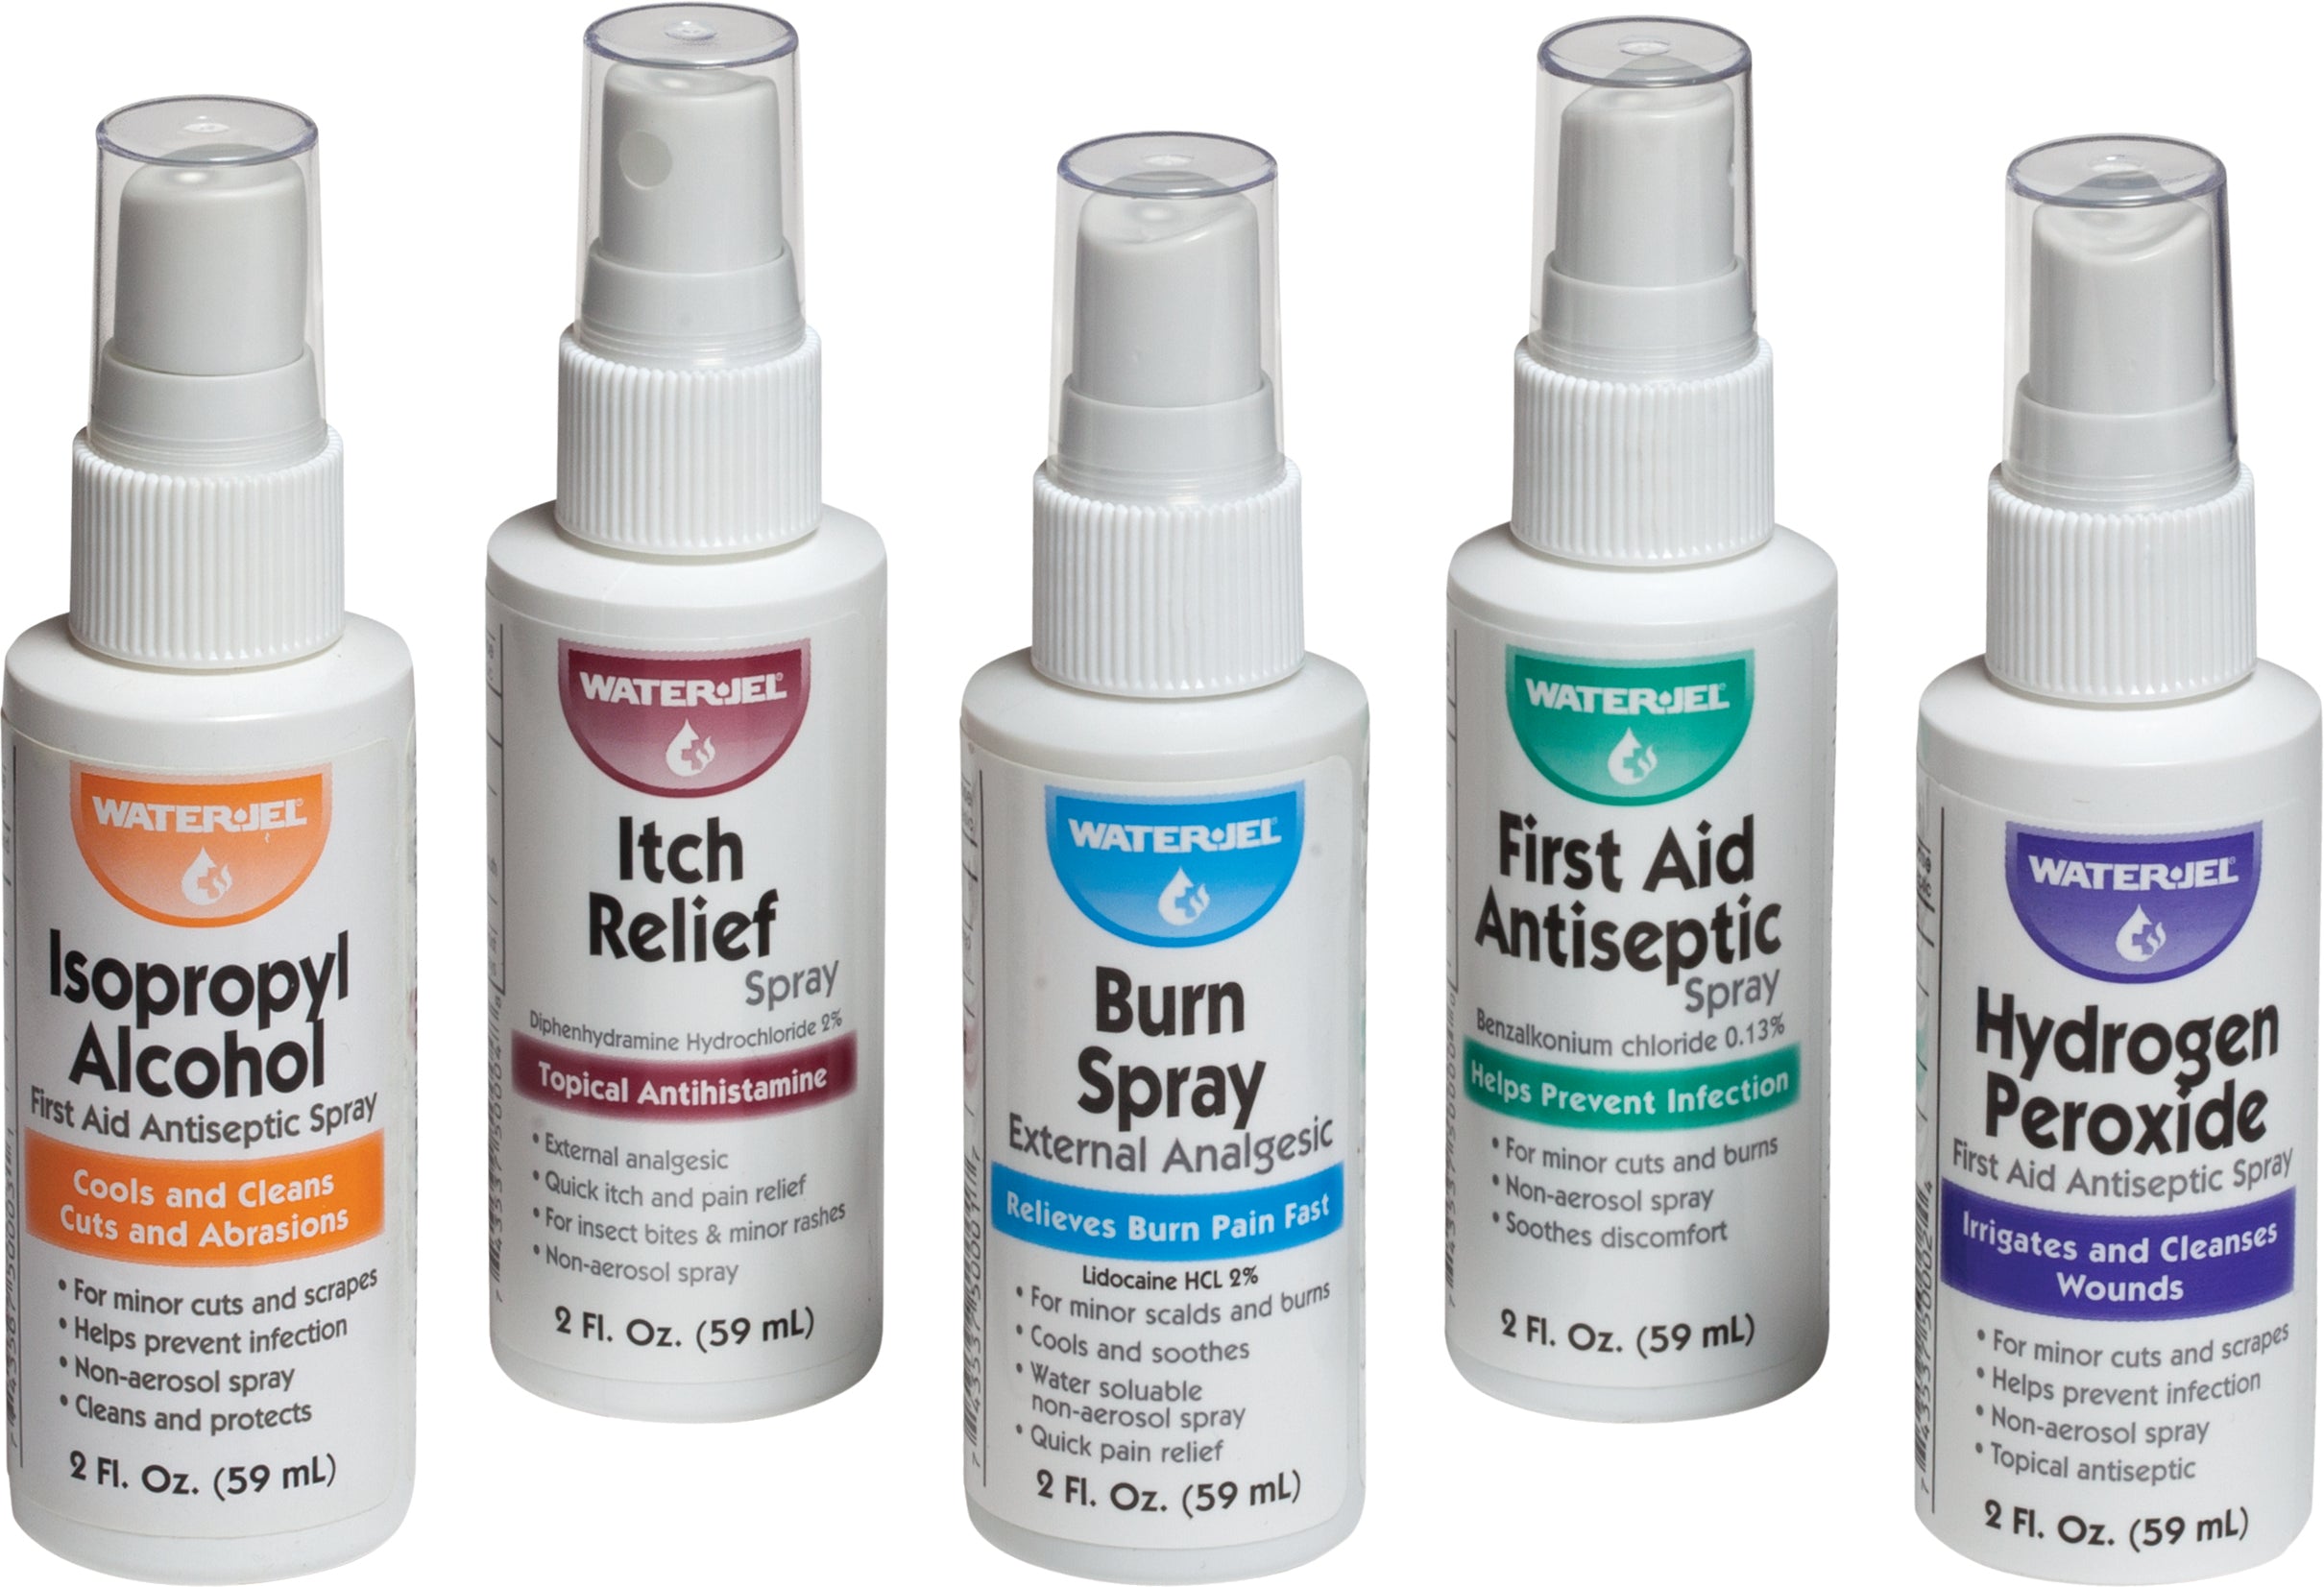 Prostat firstaid Pump Sprays-eSafety Supplies, Inc